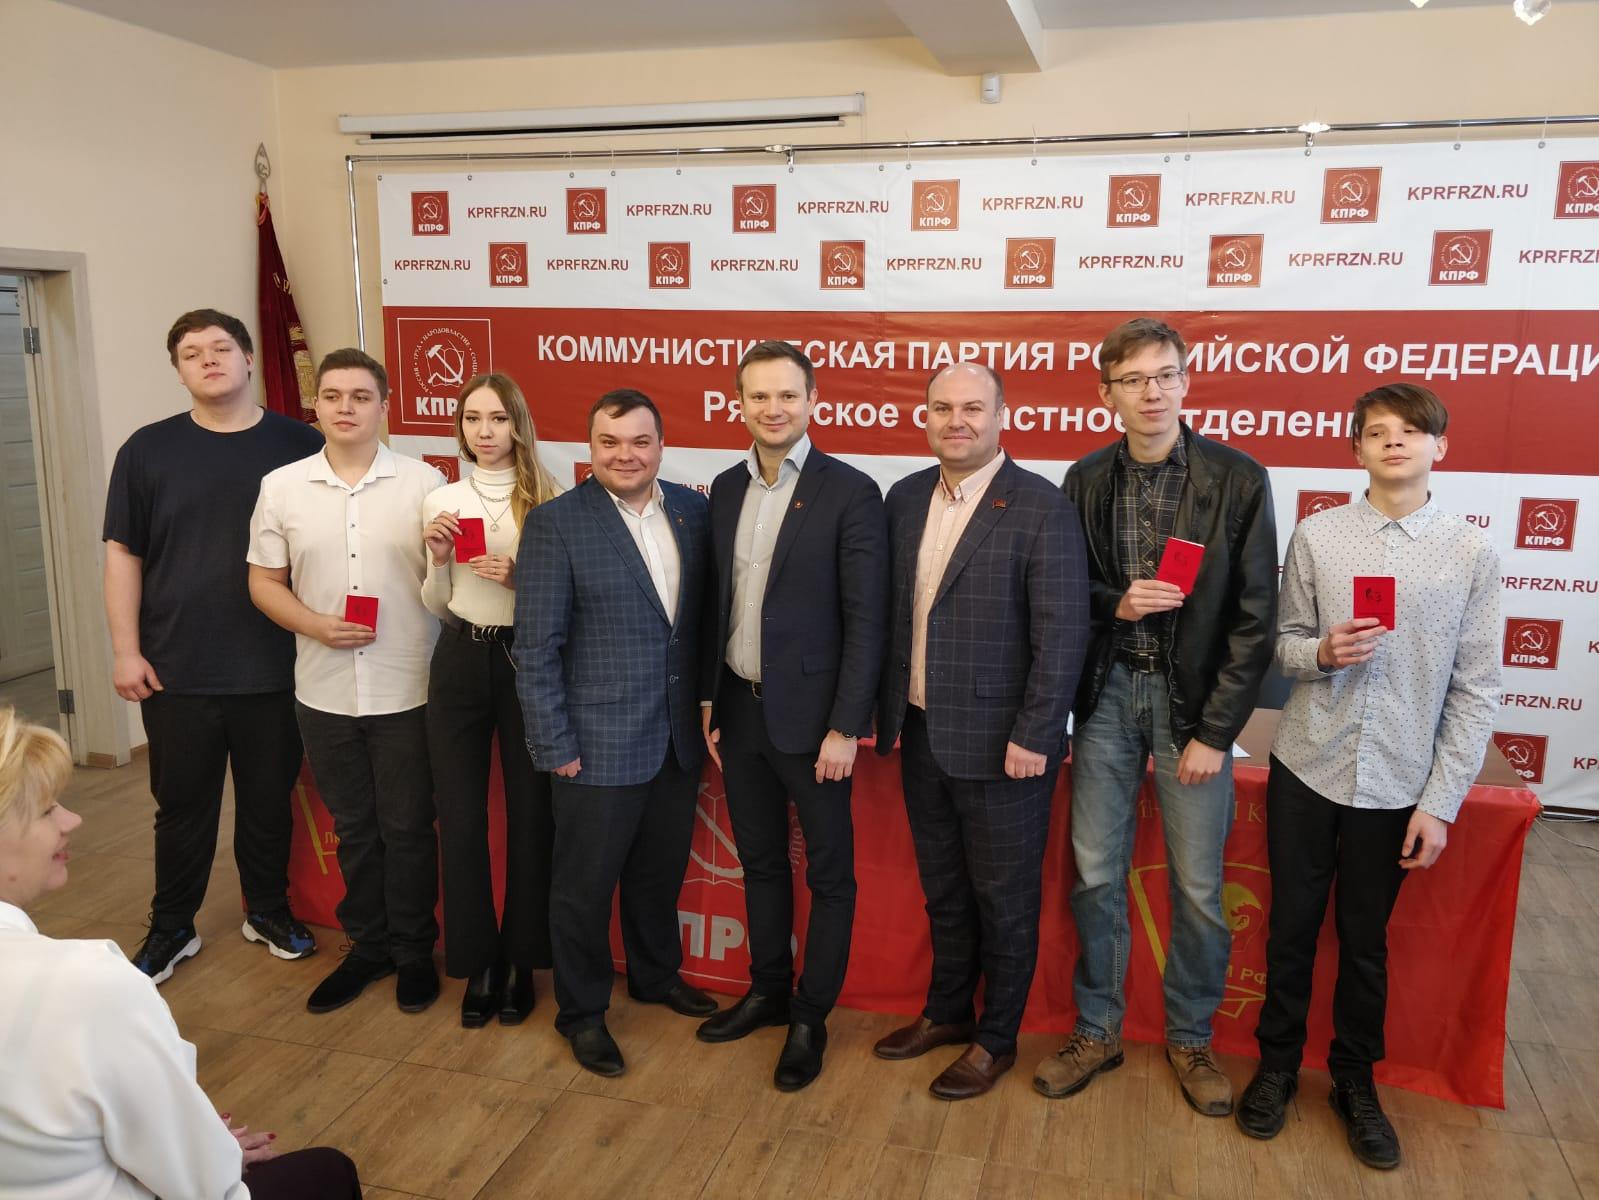 9 апреля в Рязани состоялась VIII отчётно-выборная Конференция Рязанского областного отделения комсомола